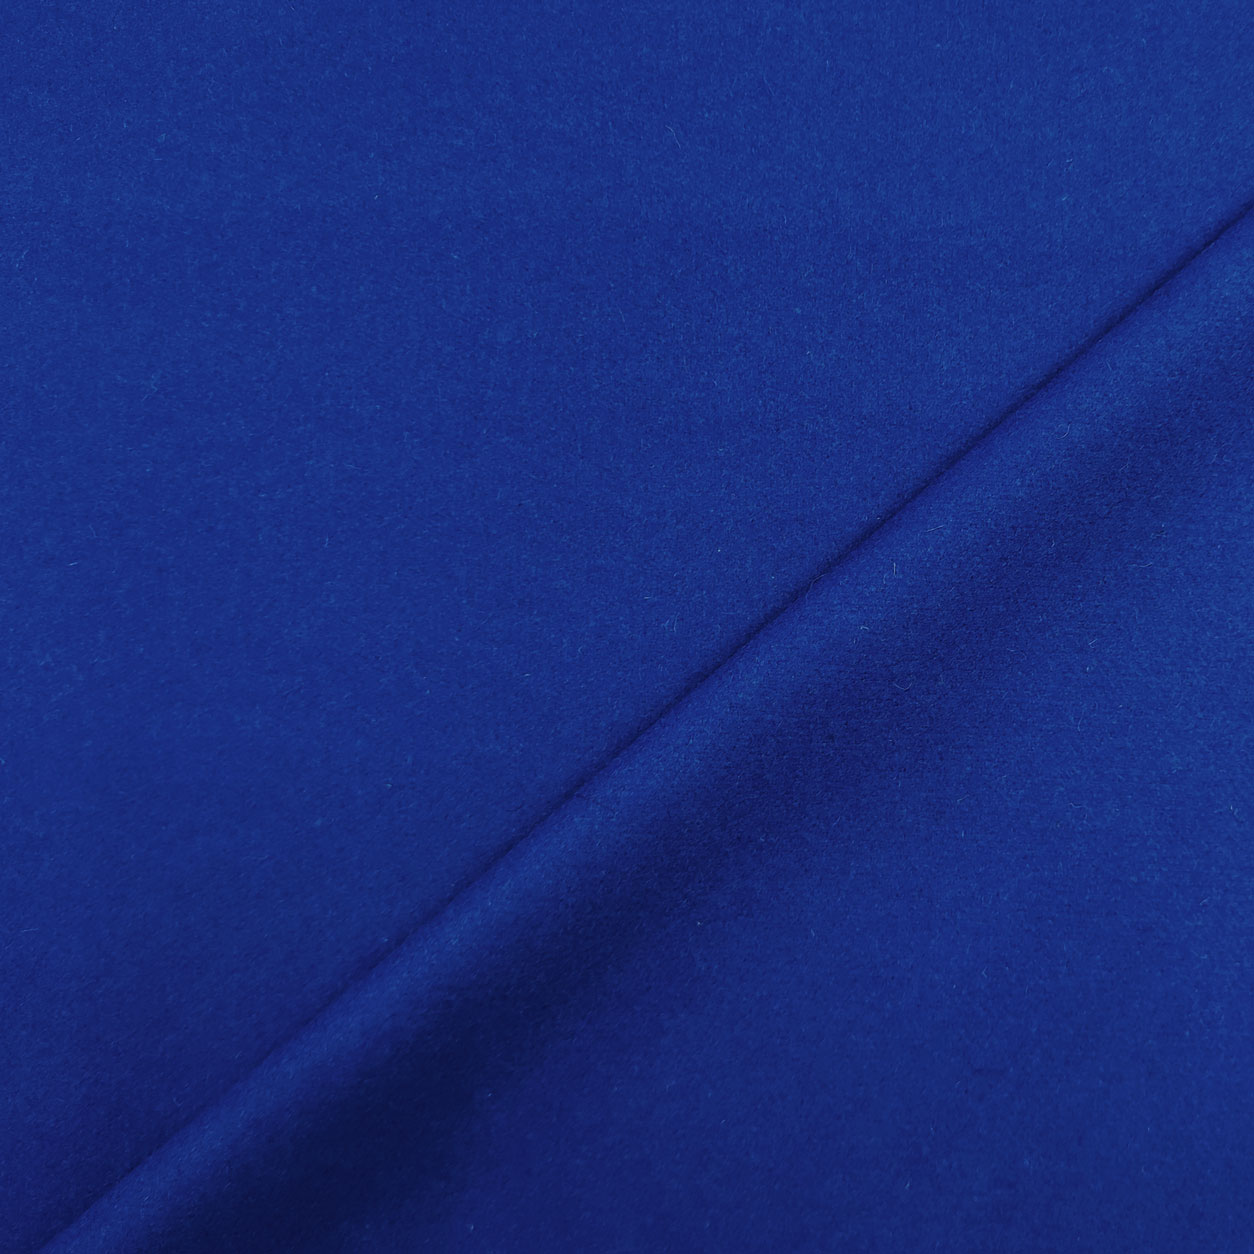 tessuto-cappotto-blu-elettrico